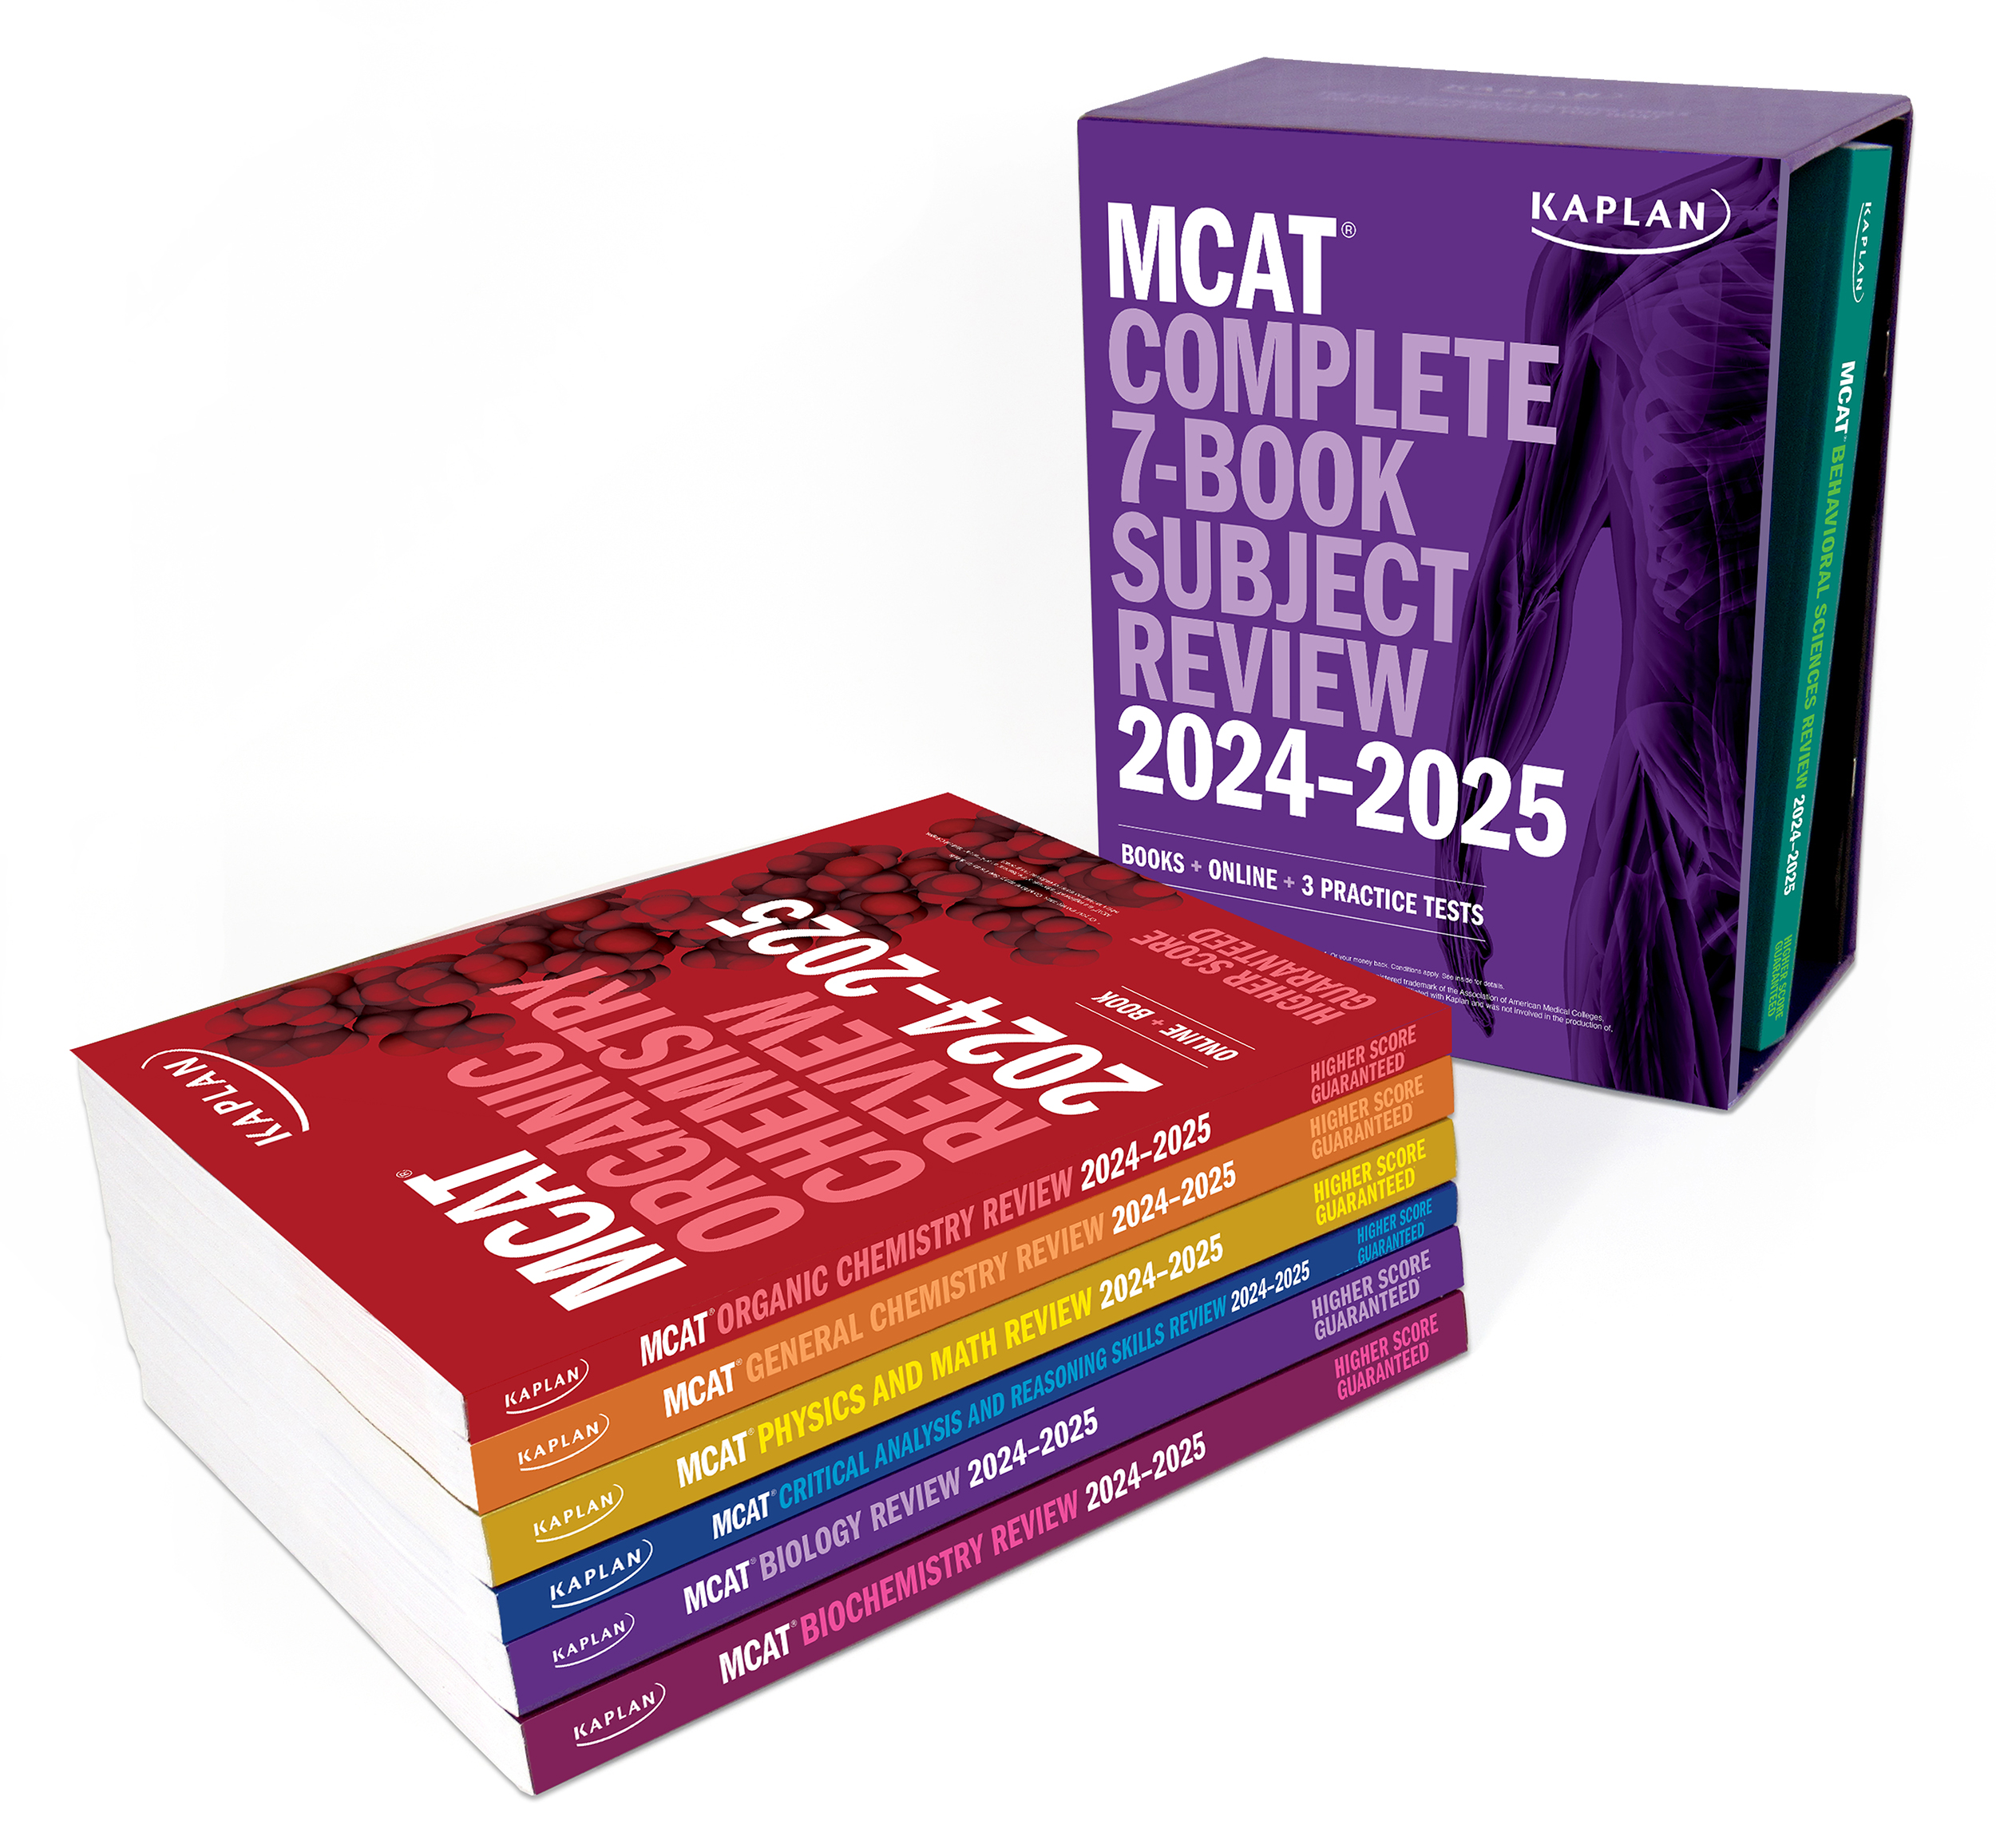 Kaplan's MCAT 7-Book Subject Review